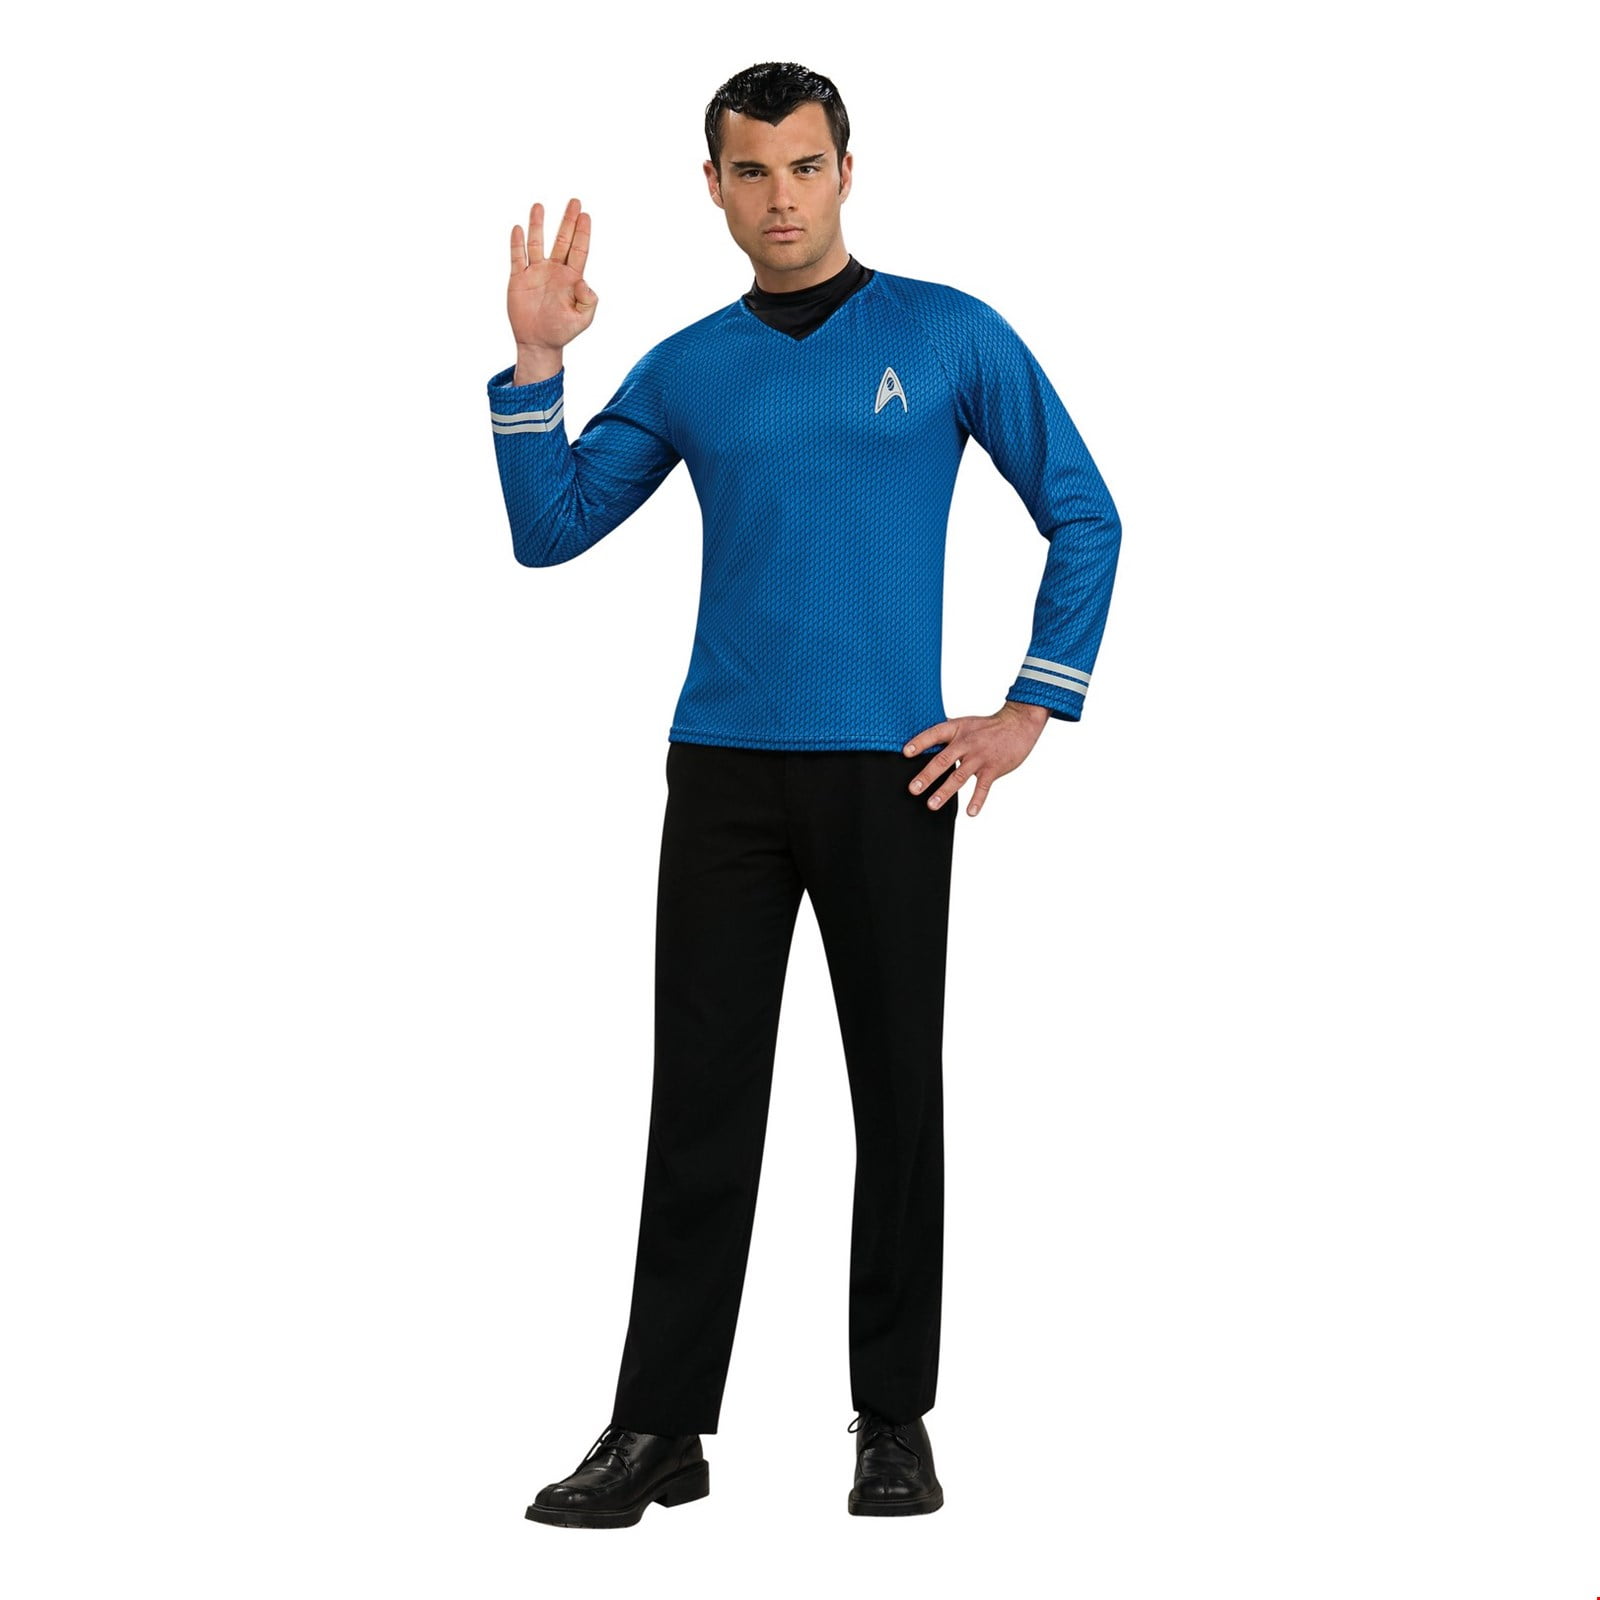 Star Trek Costumes Adult Deluxe Star Fleet Uniform Halloween Fancy Dress 